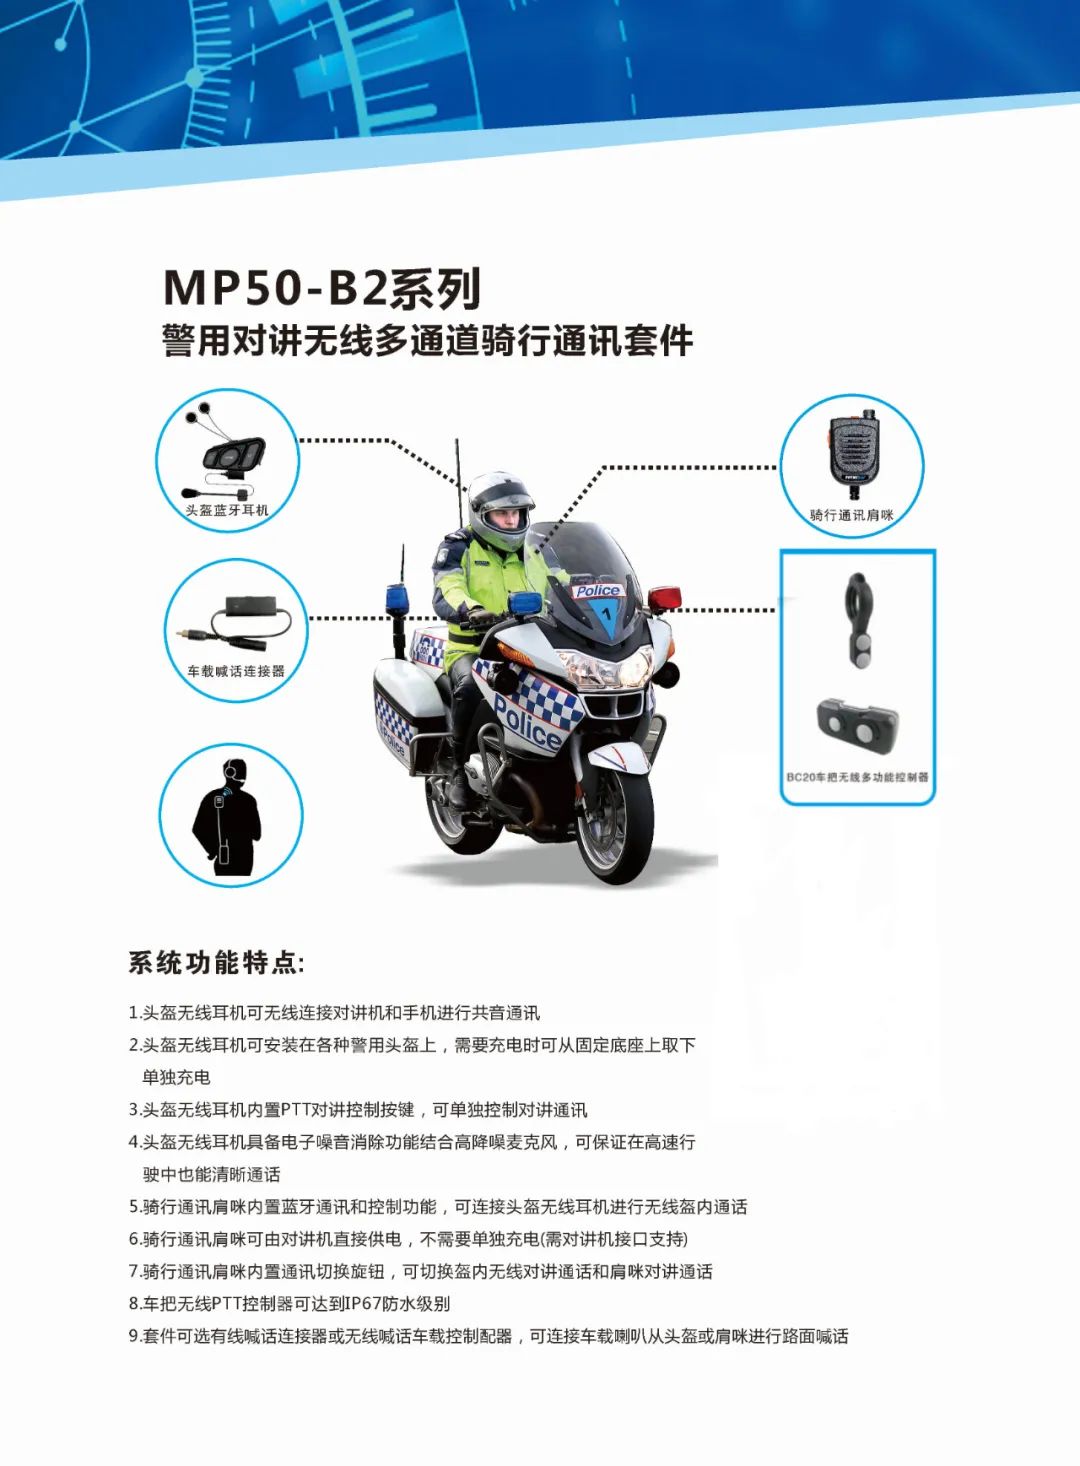 普莱美MP50-B2警用摩托车骑行全无线通讯系统